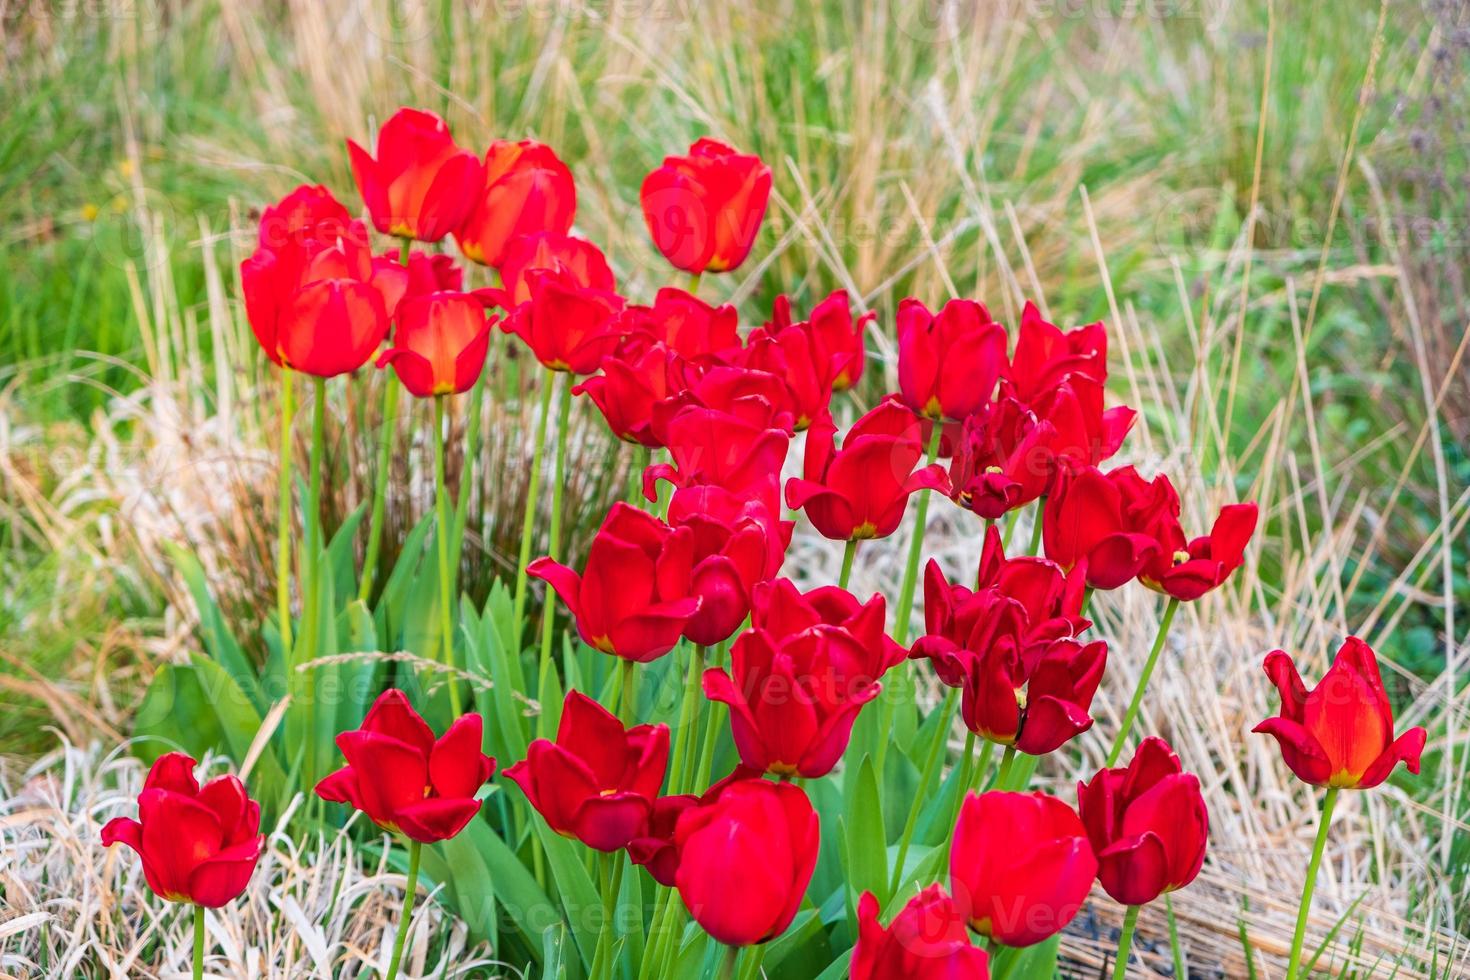 Tulipes rouges à Whitworth Park, Manchester. paysage de printemps photo